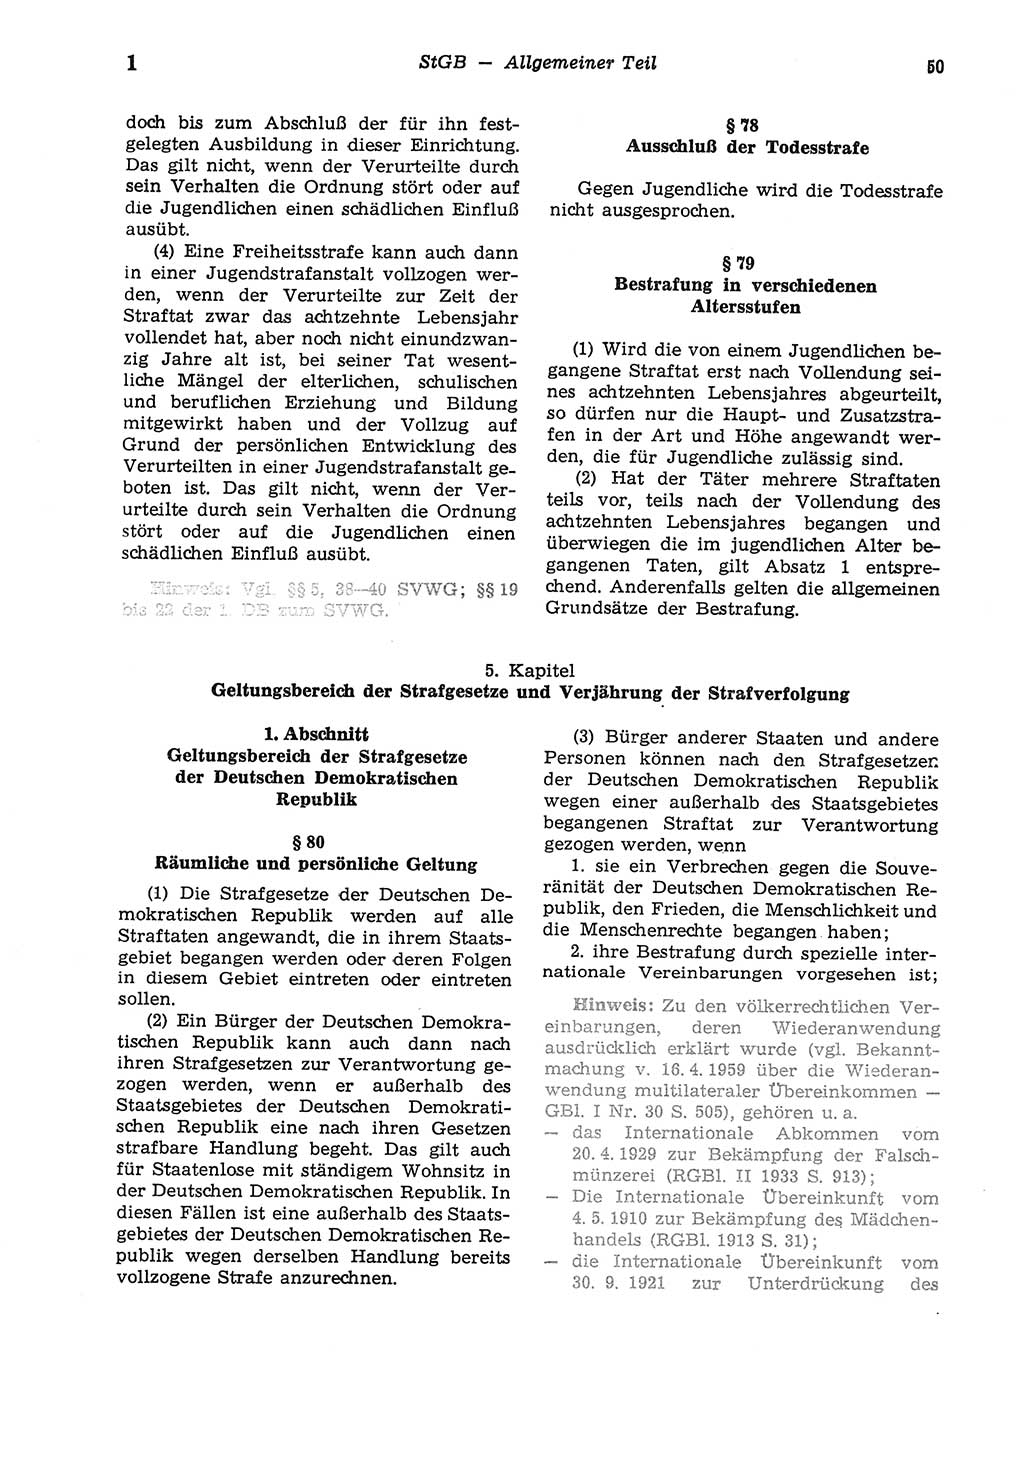 Strafgesetzbuch (StGB) der Deutschen Demokratischen Republik (DDR) und angrenzende Gesetze und Bestimmungen 1975, Seite 50 (StGB DDR Ges. Best. 1975, S. 50)